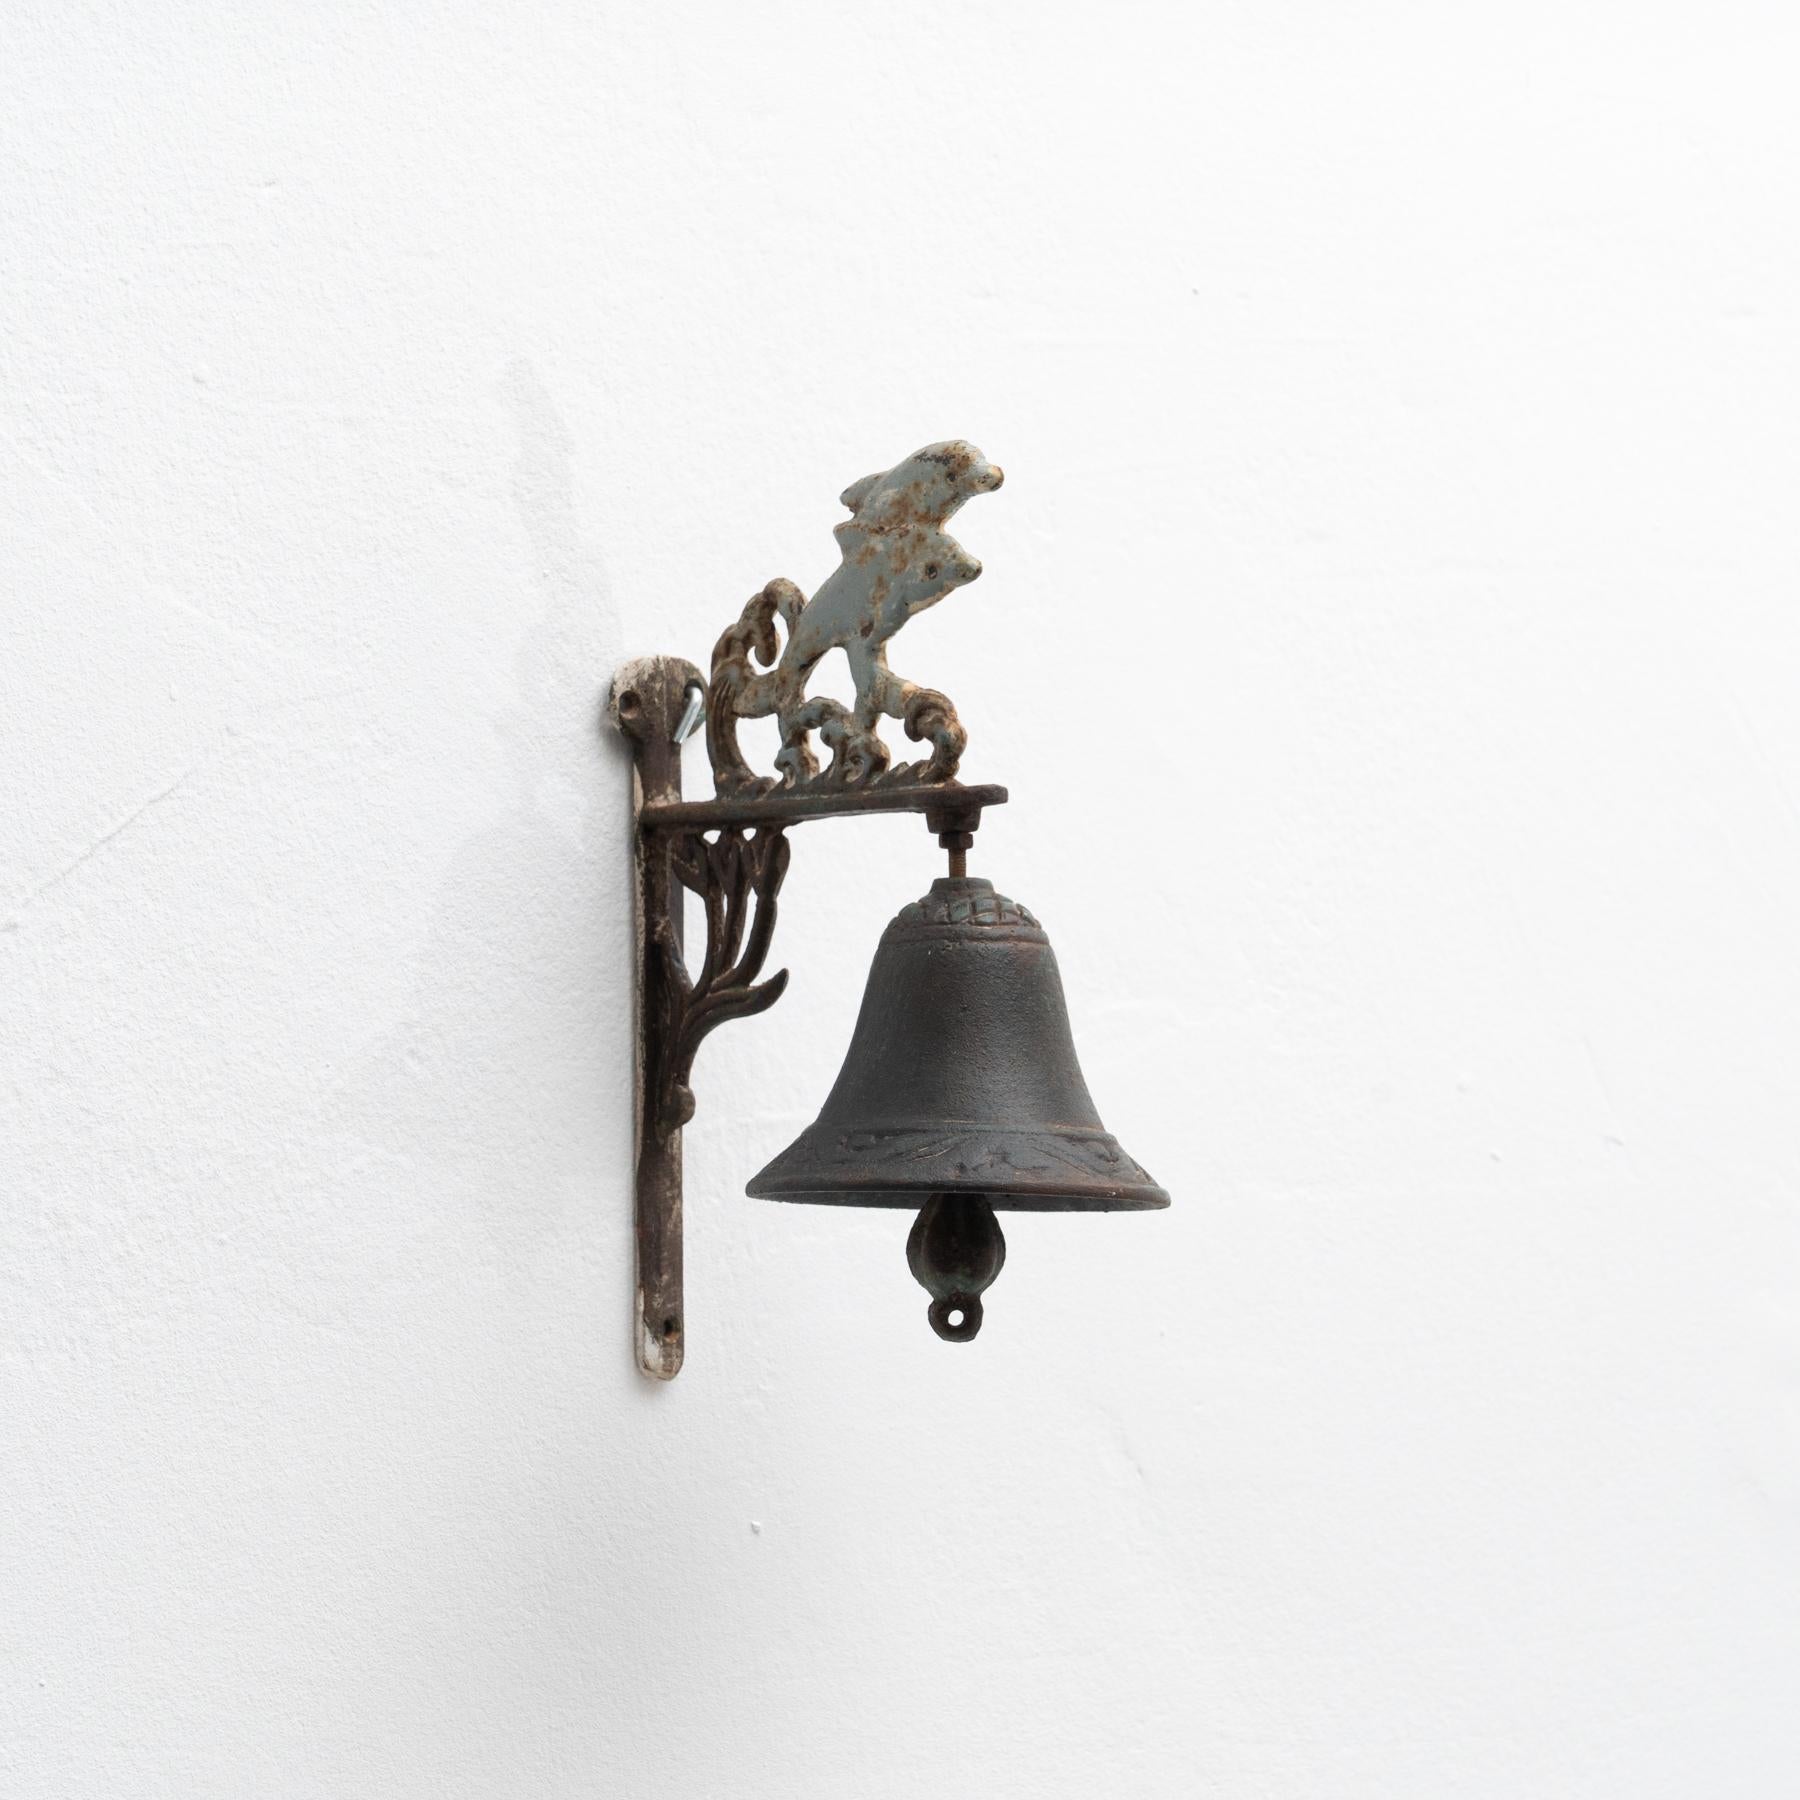 Dekorative Glocke aus Gusseisen für die Wand, etwa Anfang des 20.

Von unbekanntem Hersteller, aus Spanien.

Im Originalzustand, mit einigen sichtbaren Gebrauchs- und Altersspuren, die eine schöne Patina erhalten haben.

MATERIALIEN:
Eisen.